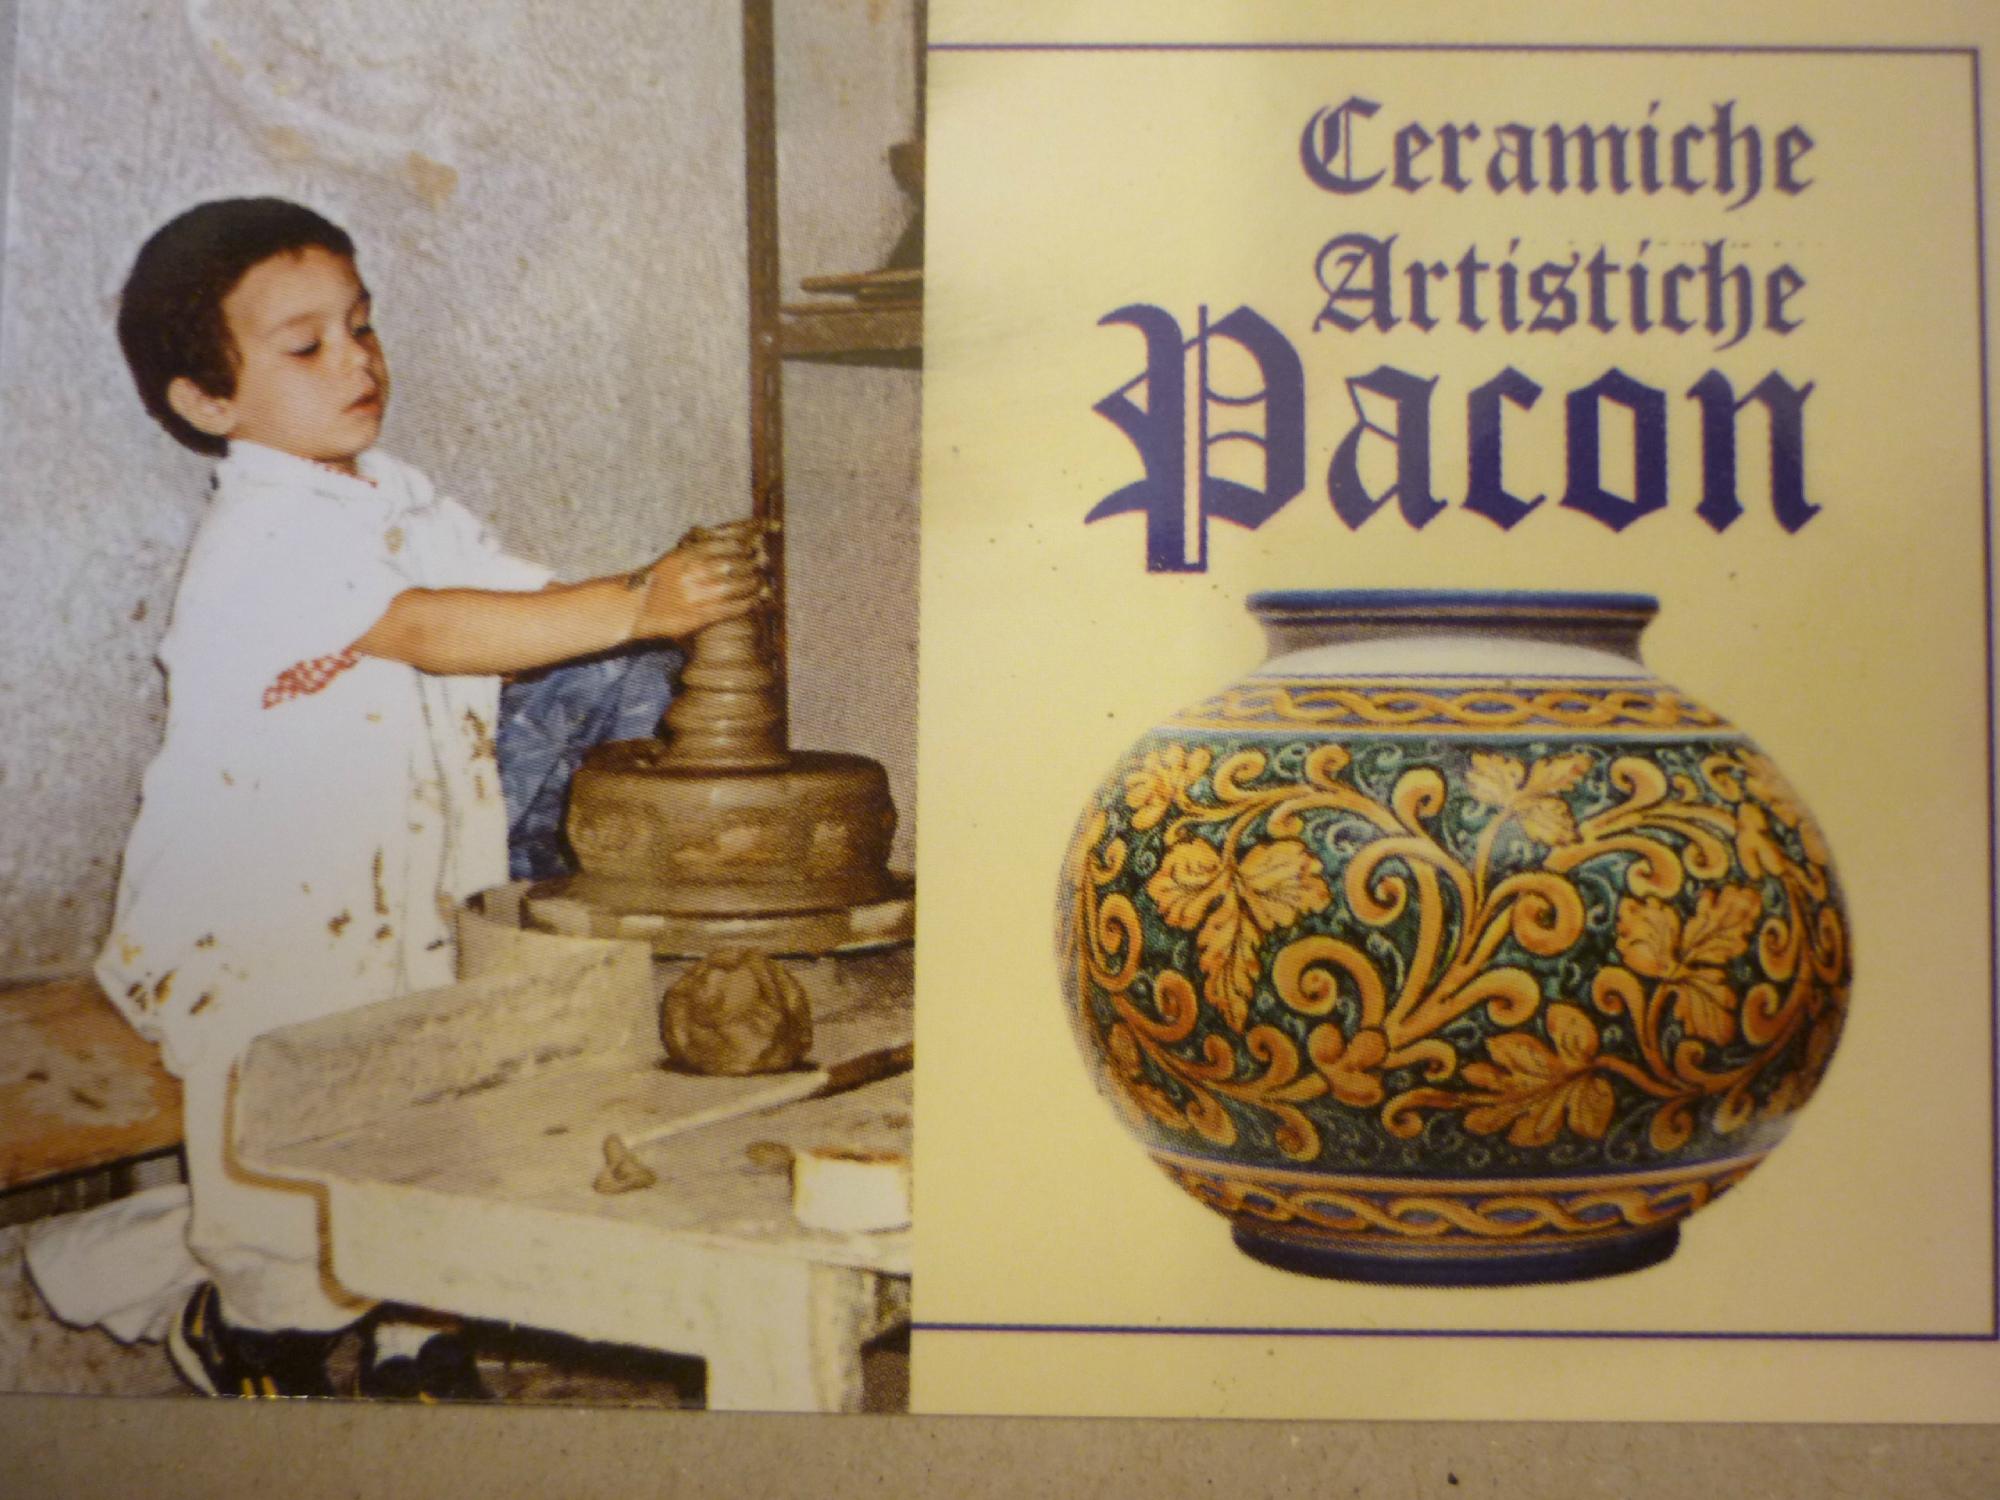 Ceramiche Artistiche Pacon